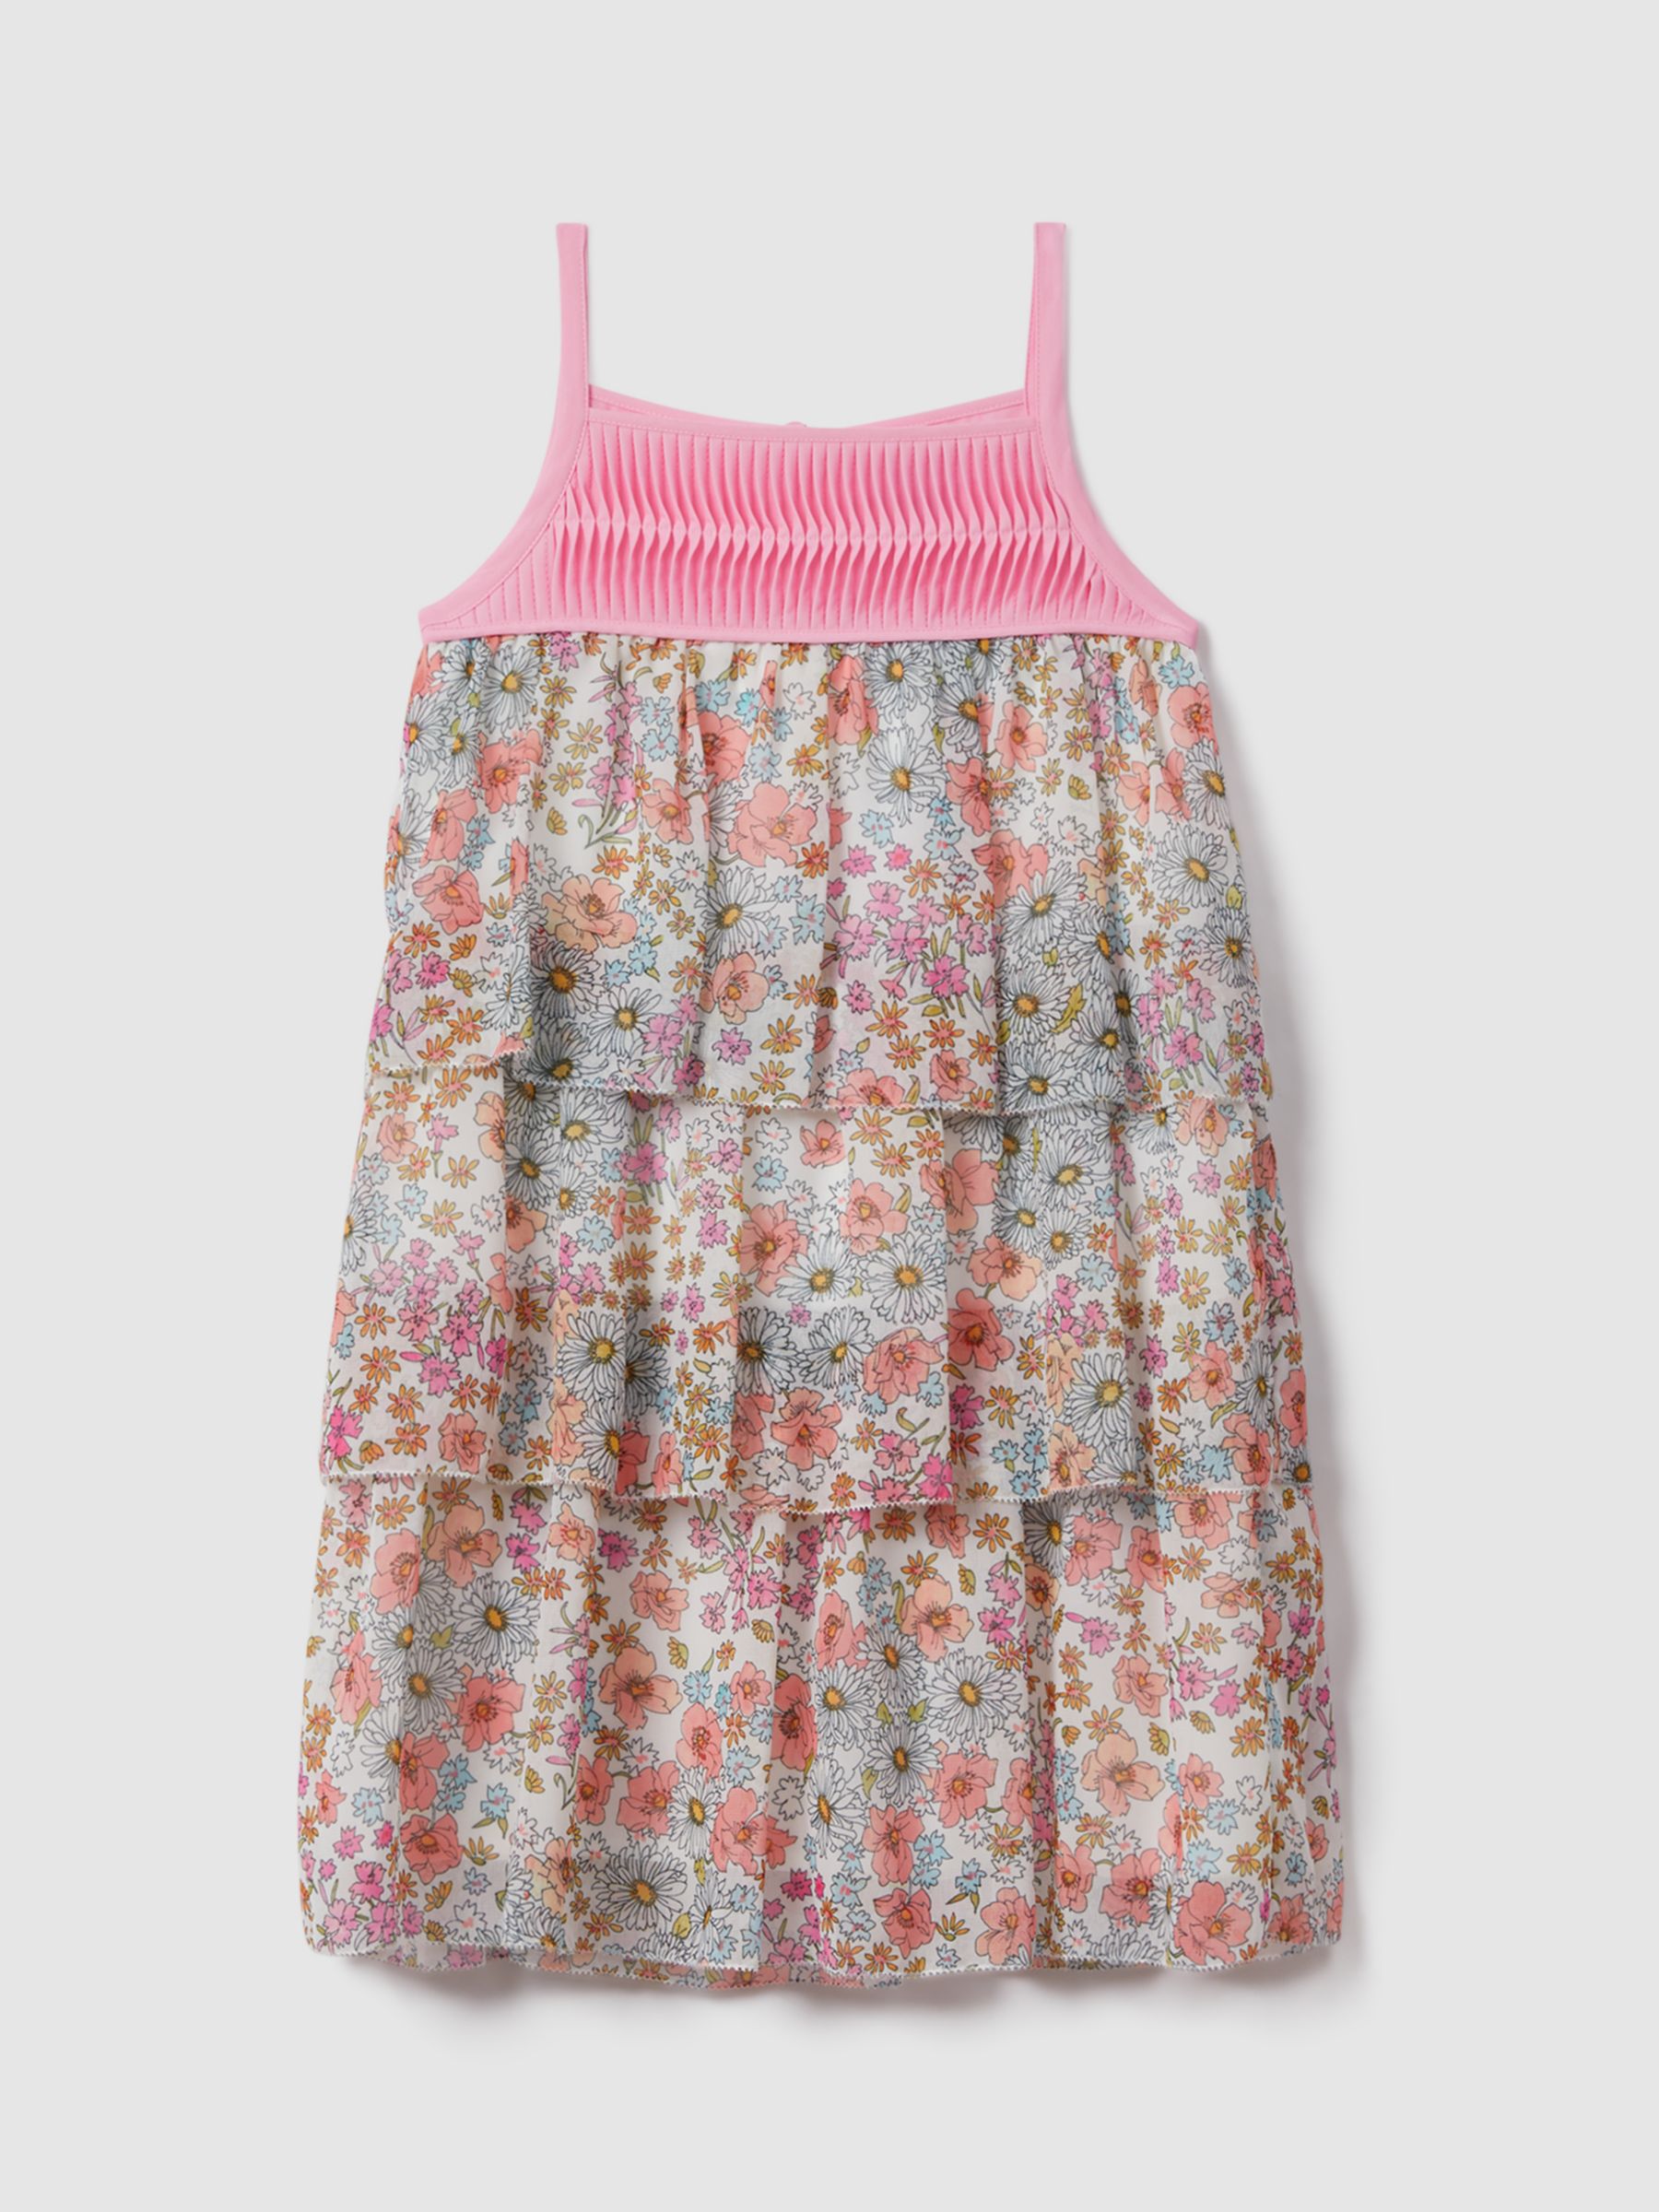 Reiss Kids' Leela Floral Print Summer Dress, Pink/Multi, 4-5 years